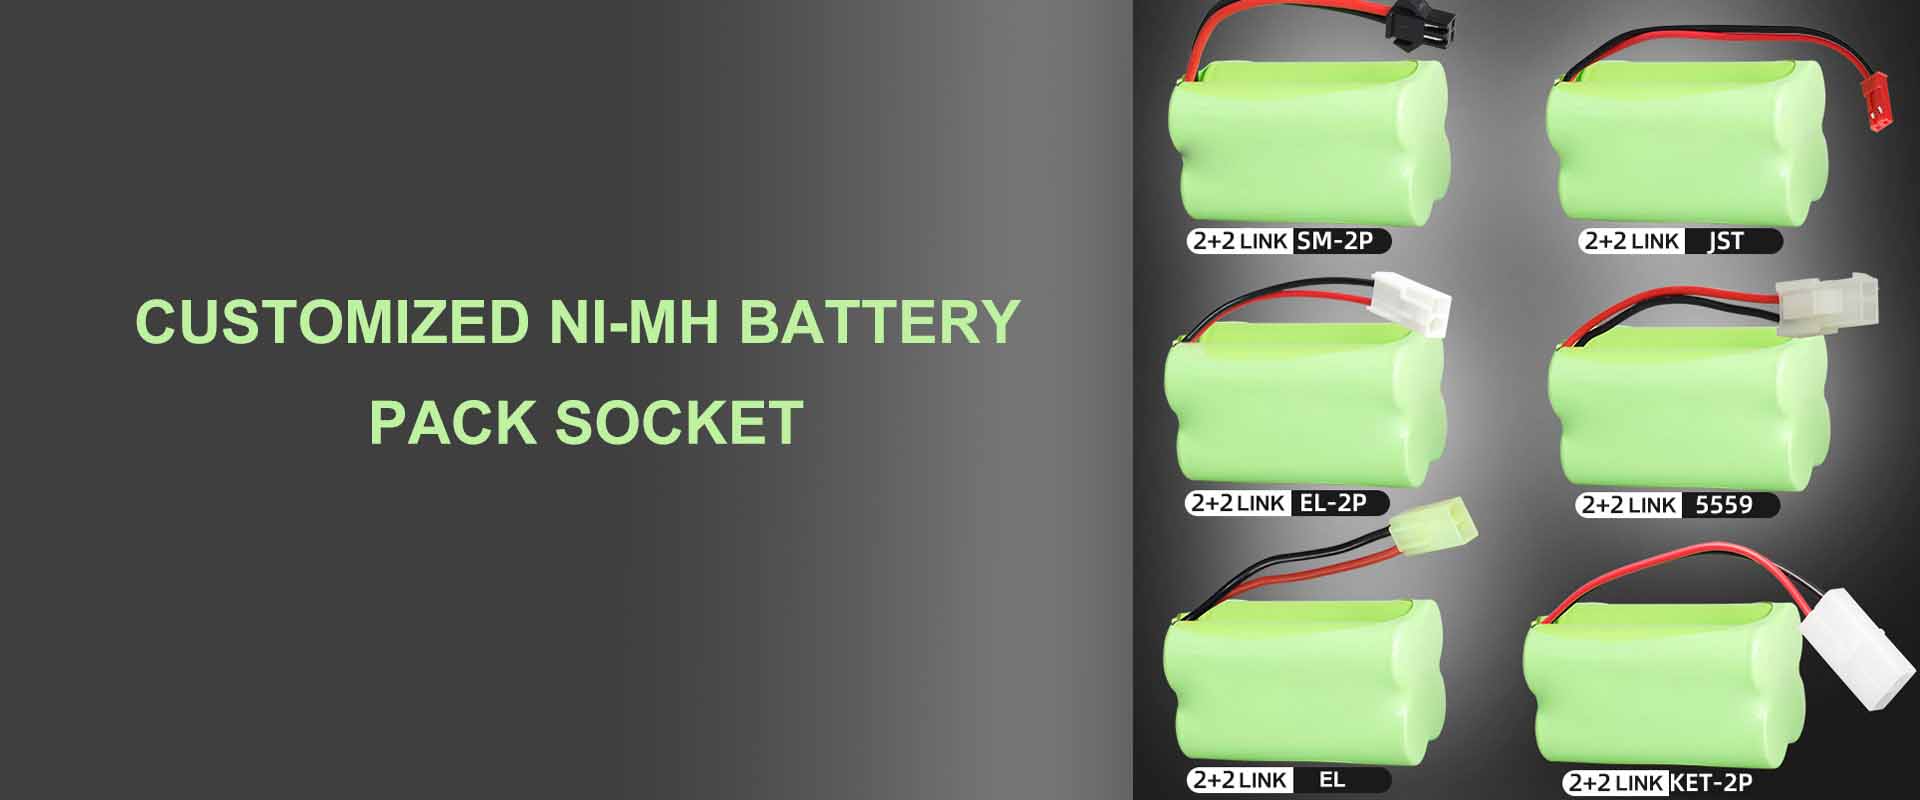 Customized Ni-MH battery